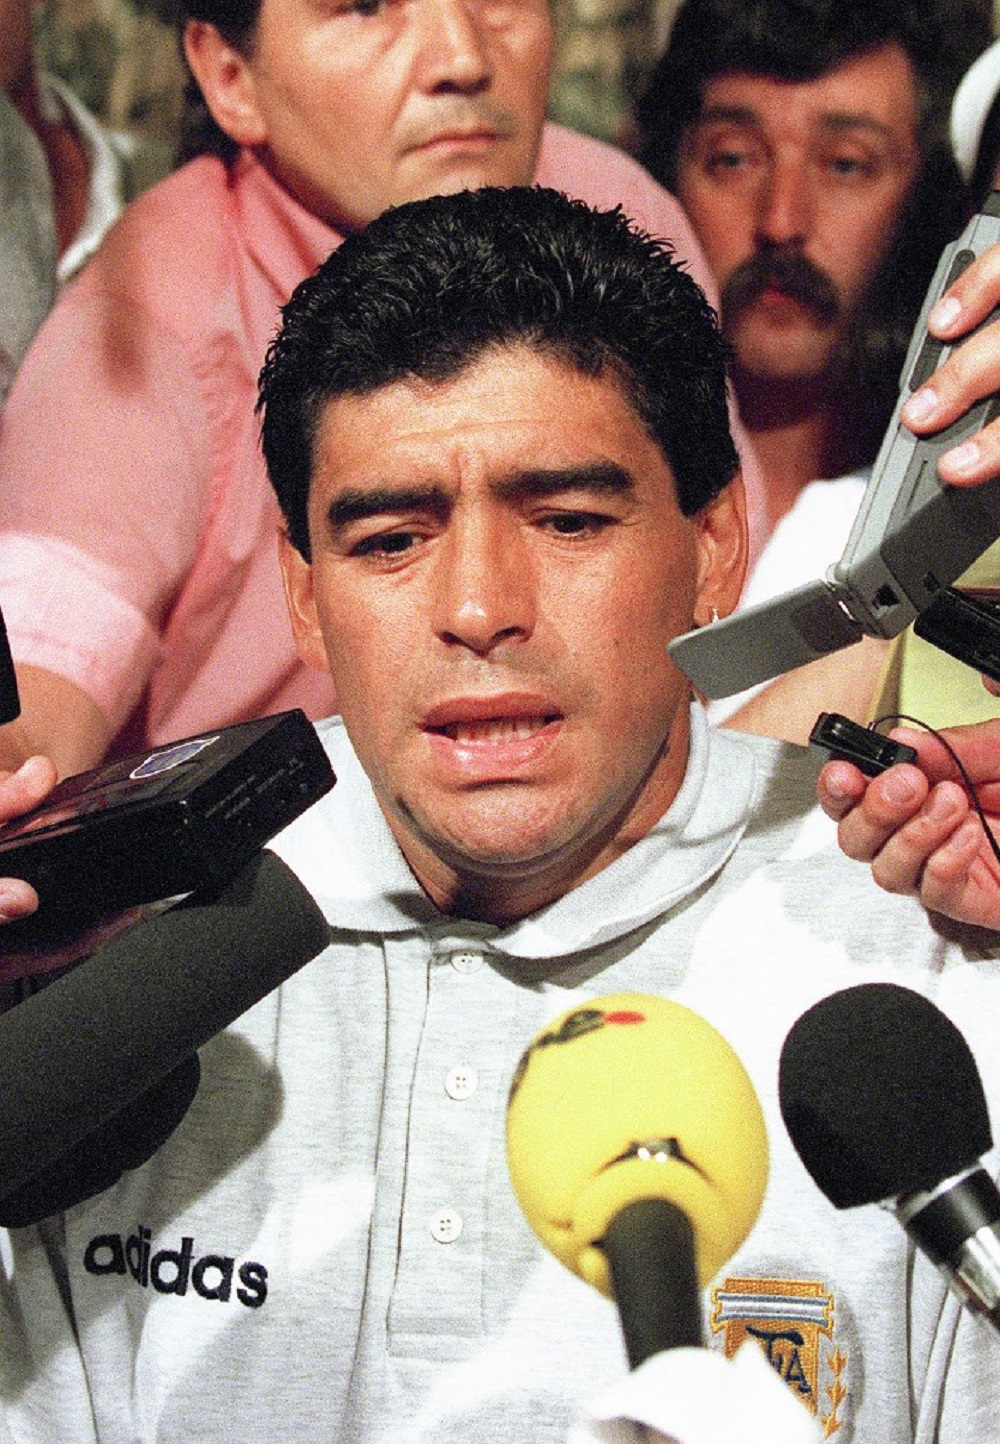 Días después, Maradona se enteró de que dio positivo. Fue retirado del equipo argentino y expulsado del Mundial por la FIFA. Según sus propias palabras, le "cortaron las piernas".